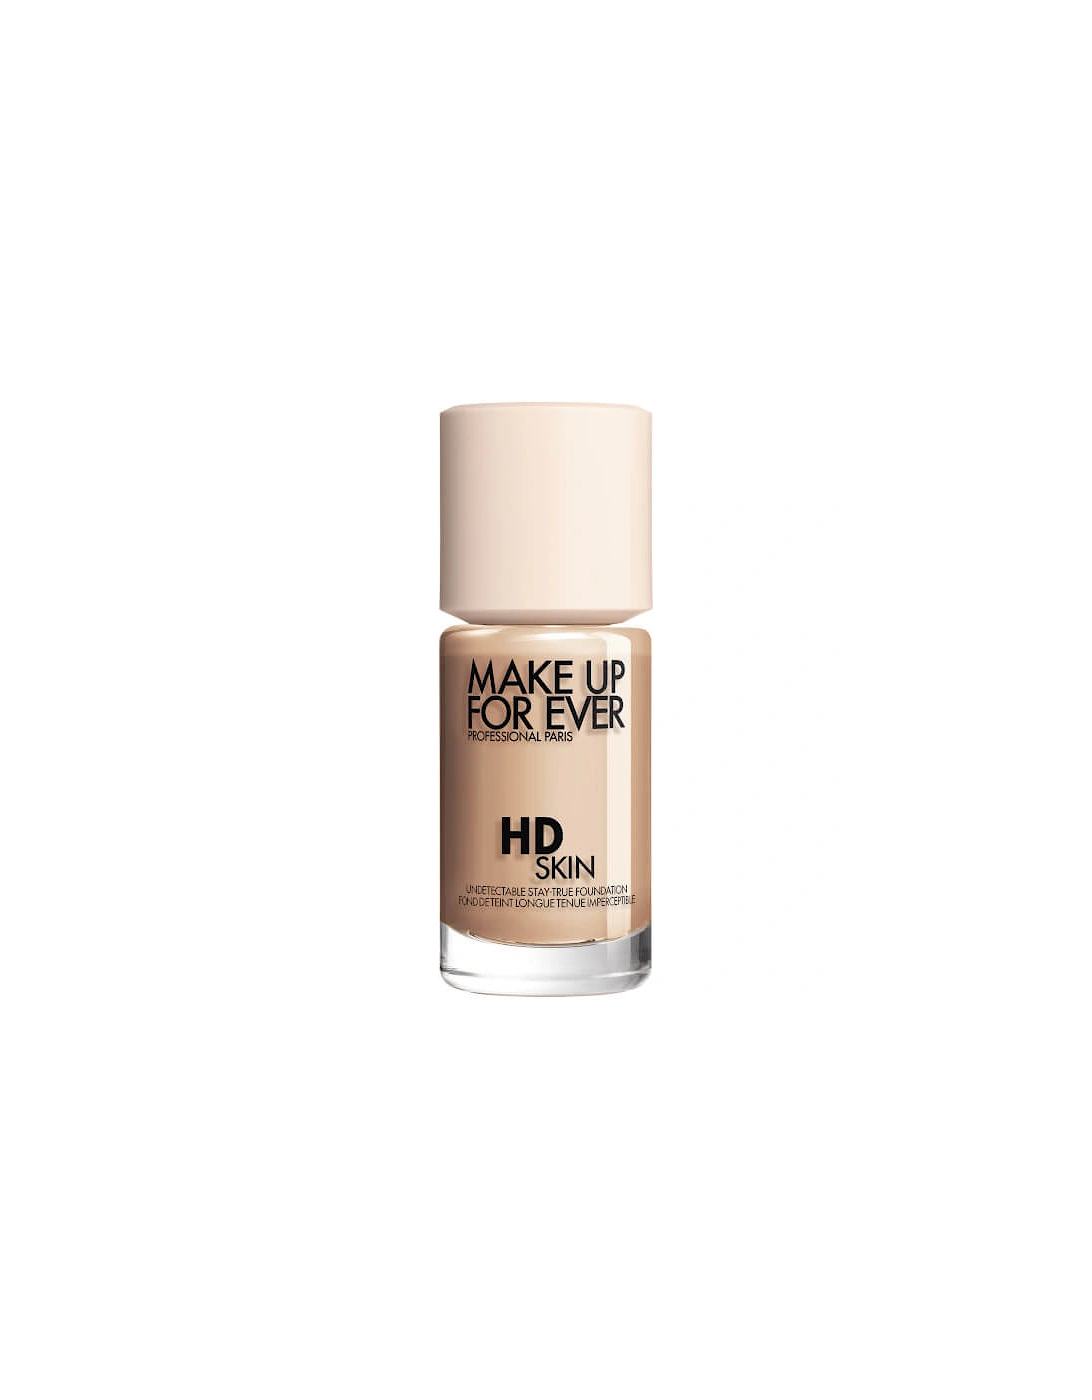 HD Skin Foundation - 1Y18 Warm Cashew, 2 of 1